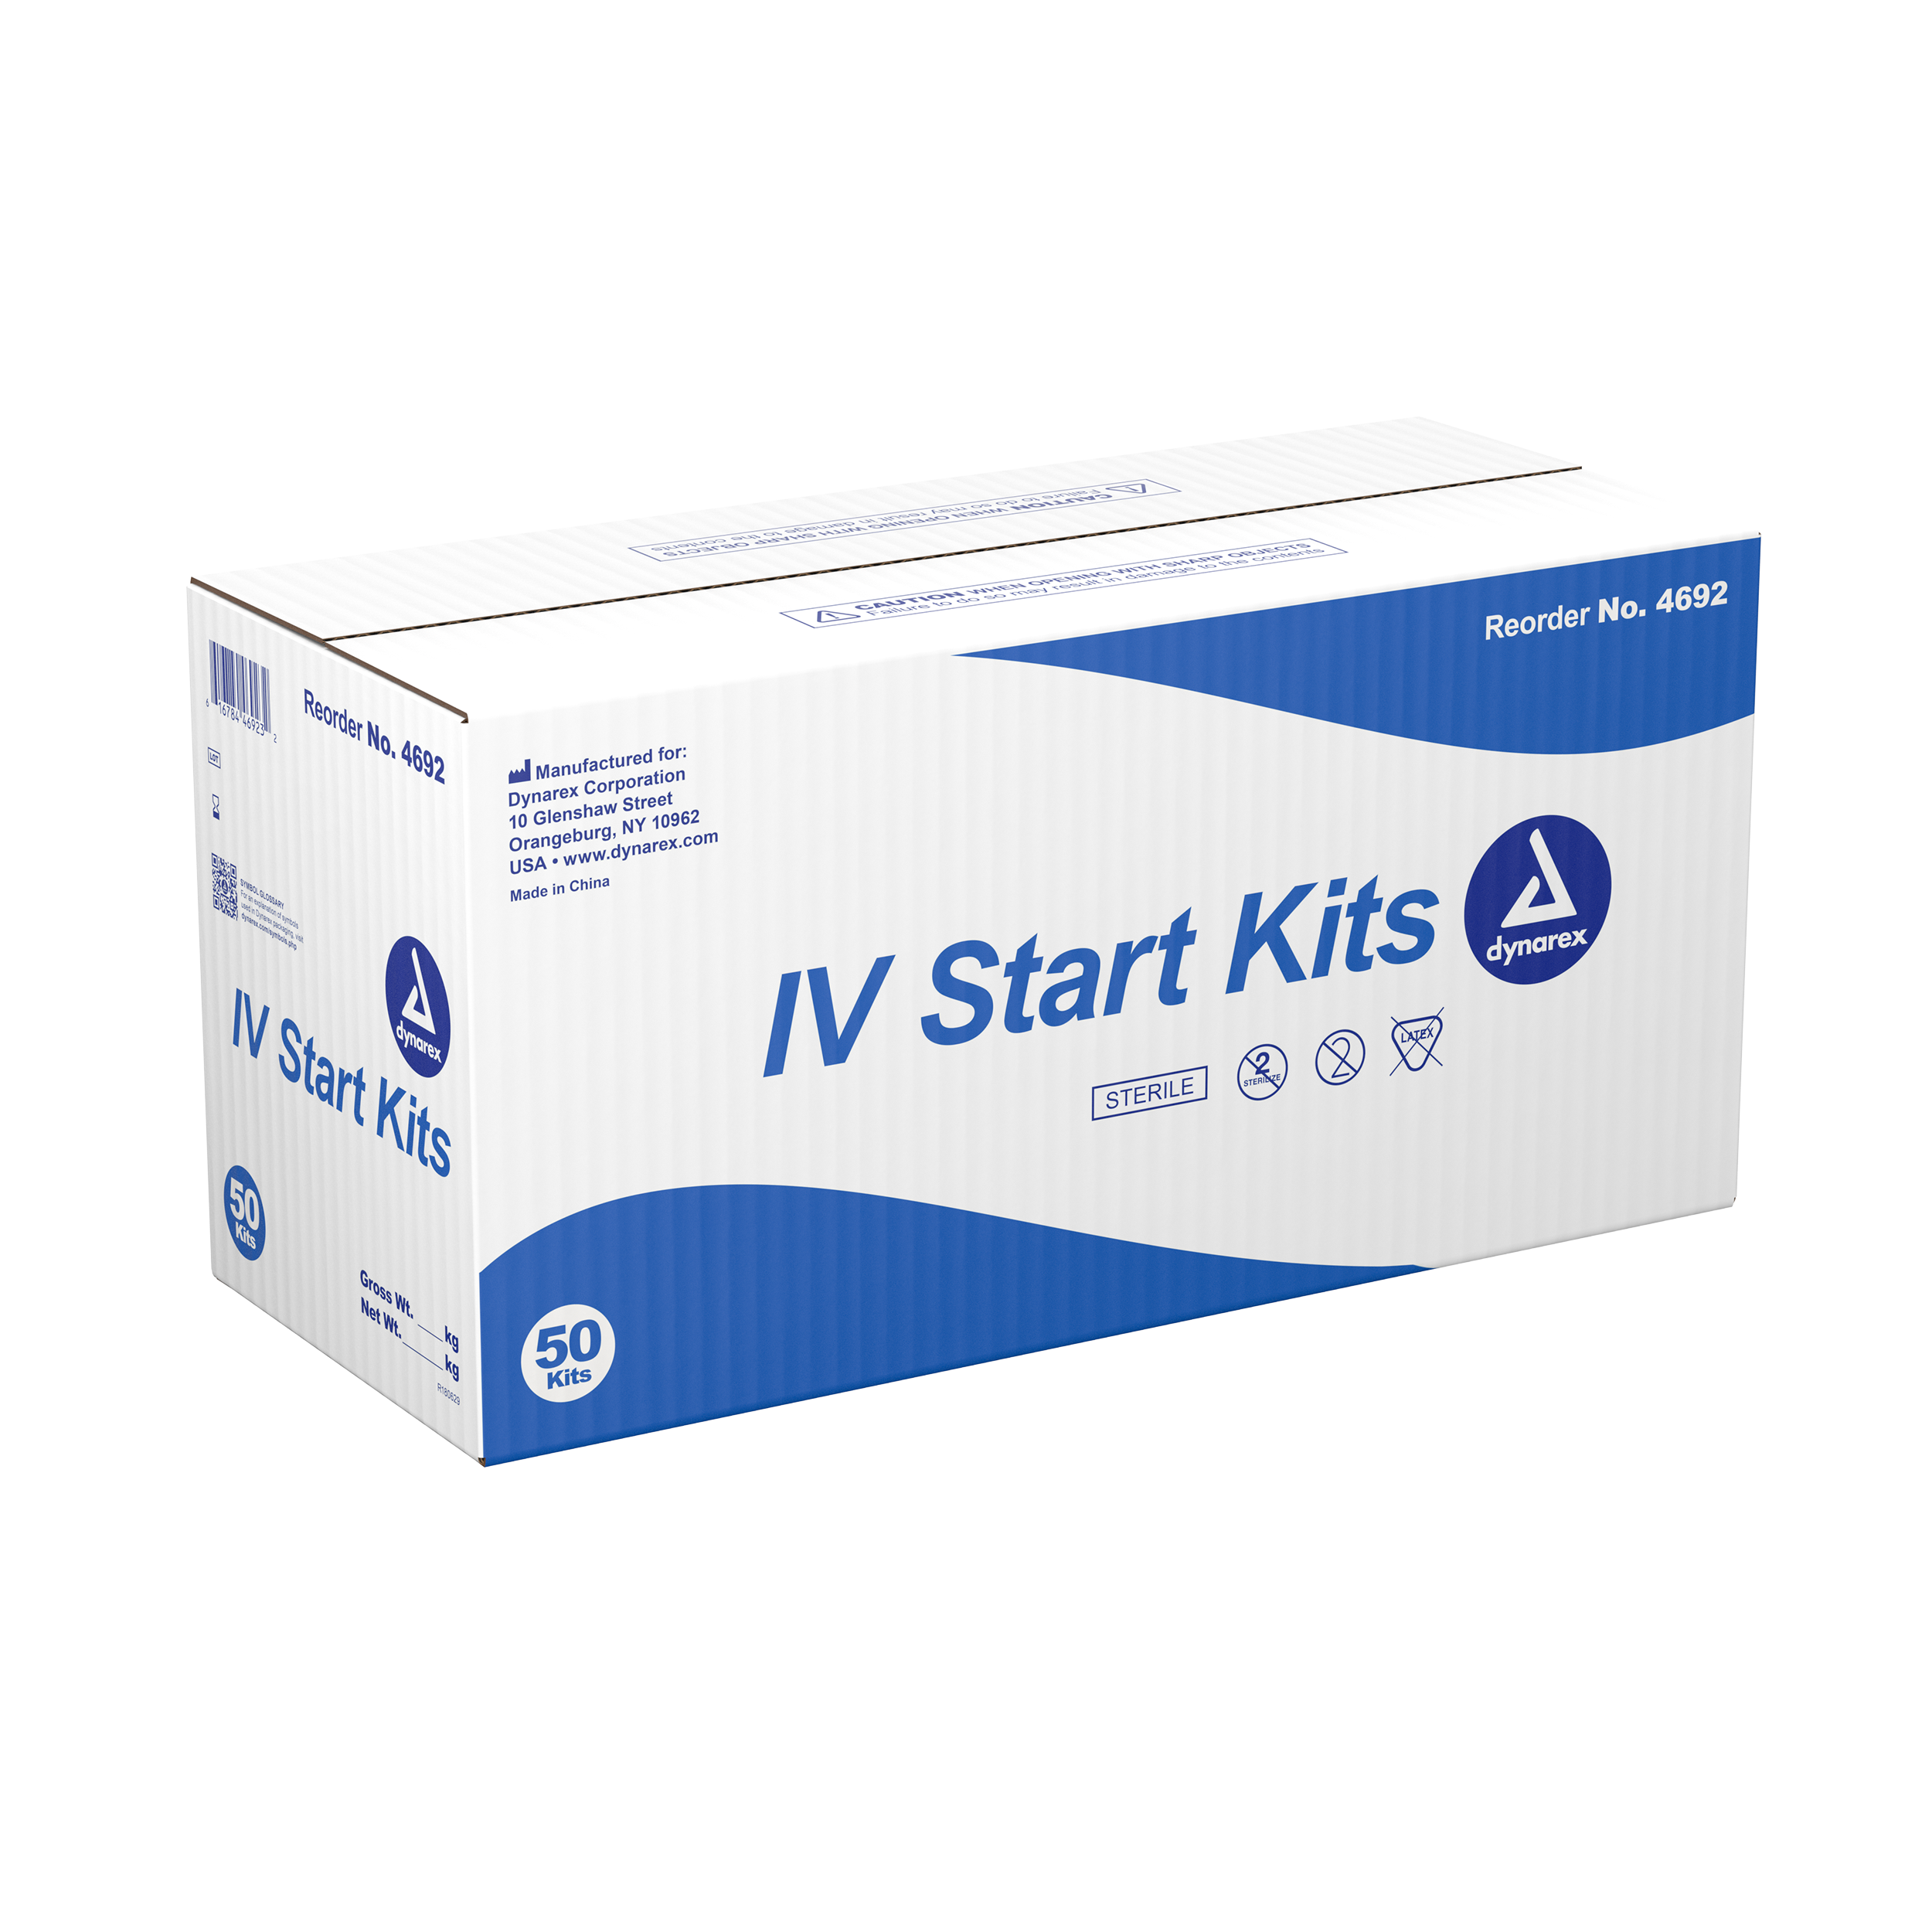 IV Start Kit Case of 50